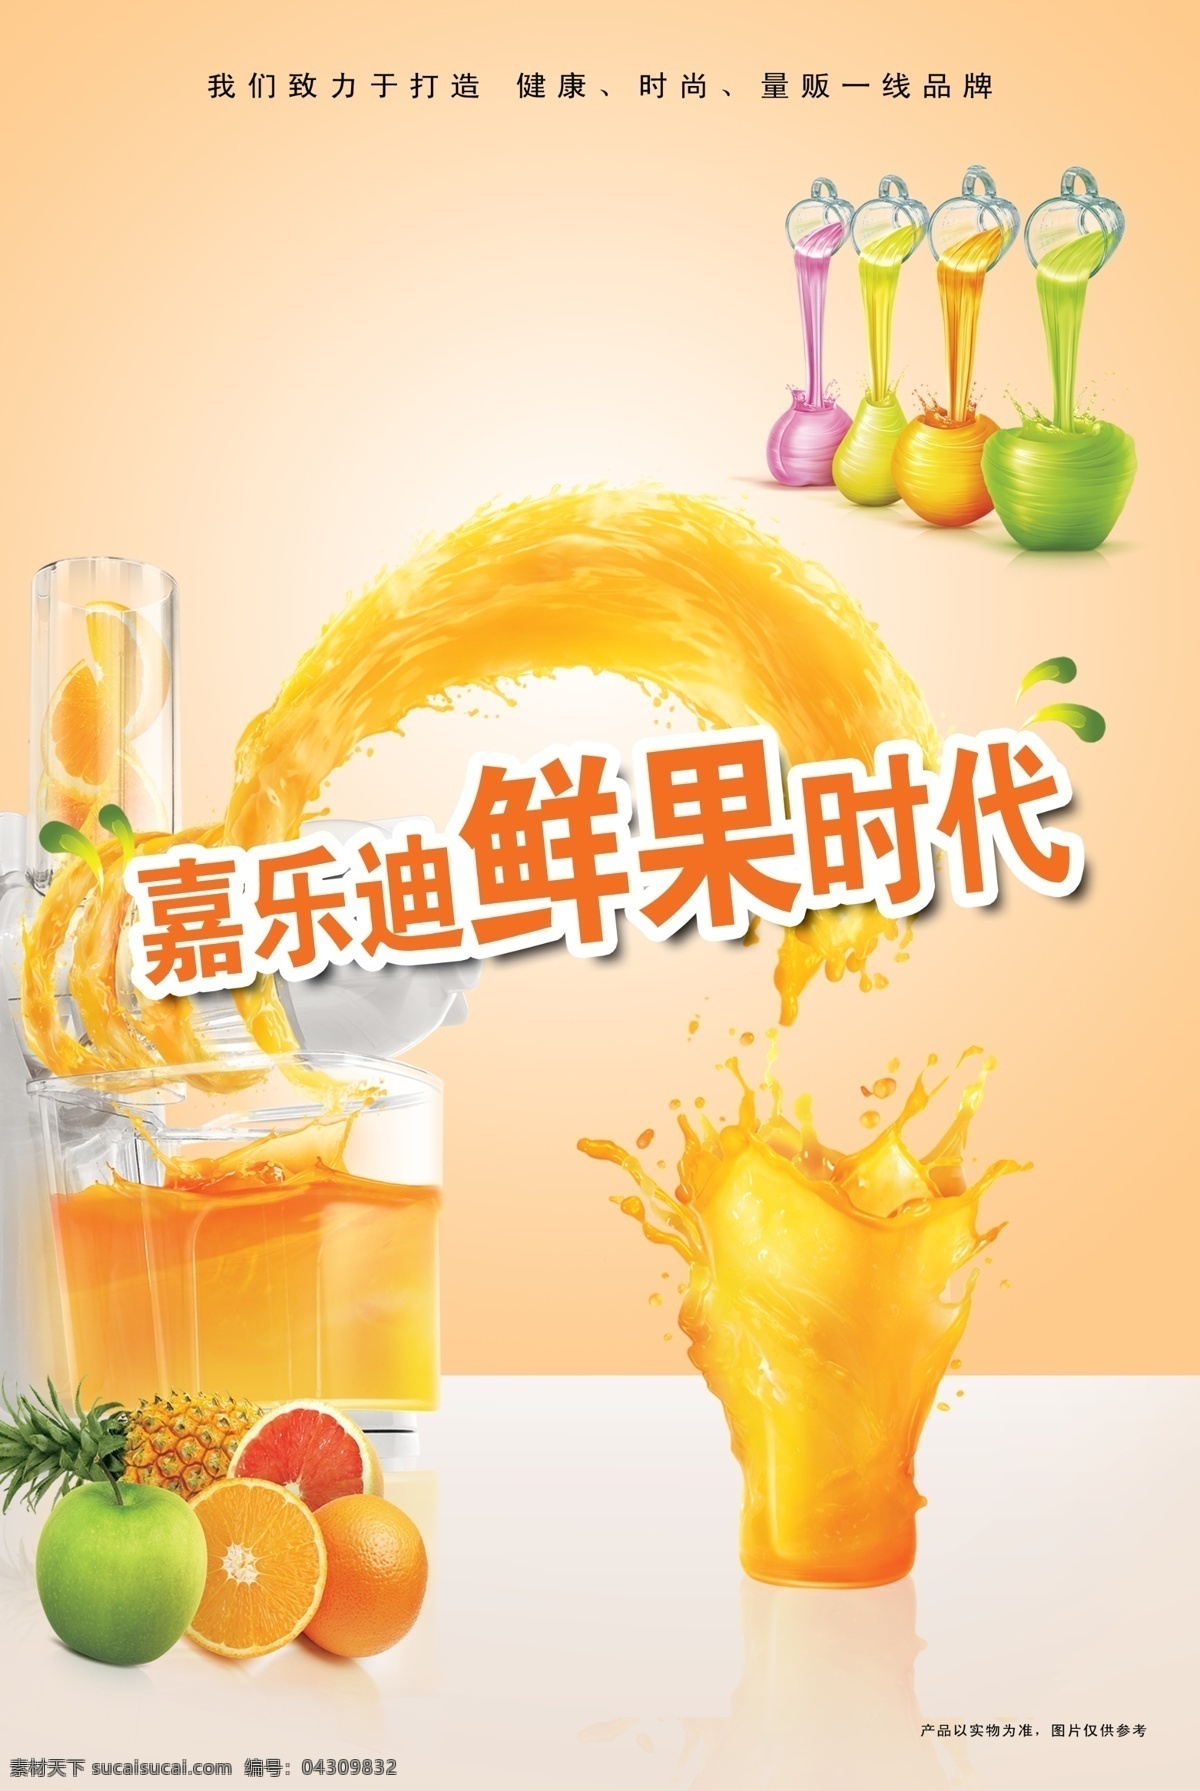 鲜果汁海报 鲜果 展板 水果 橙汁 果汁 黄色背景 果汁机 设计展板 分层 广告设计模板 源文件 psd素材